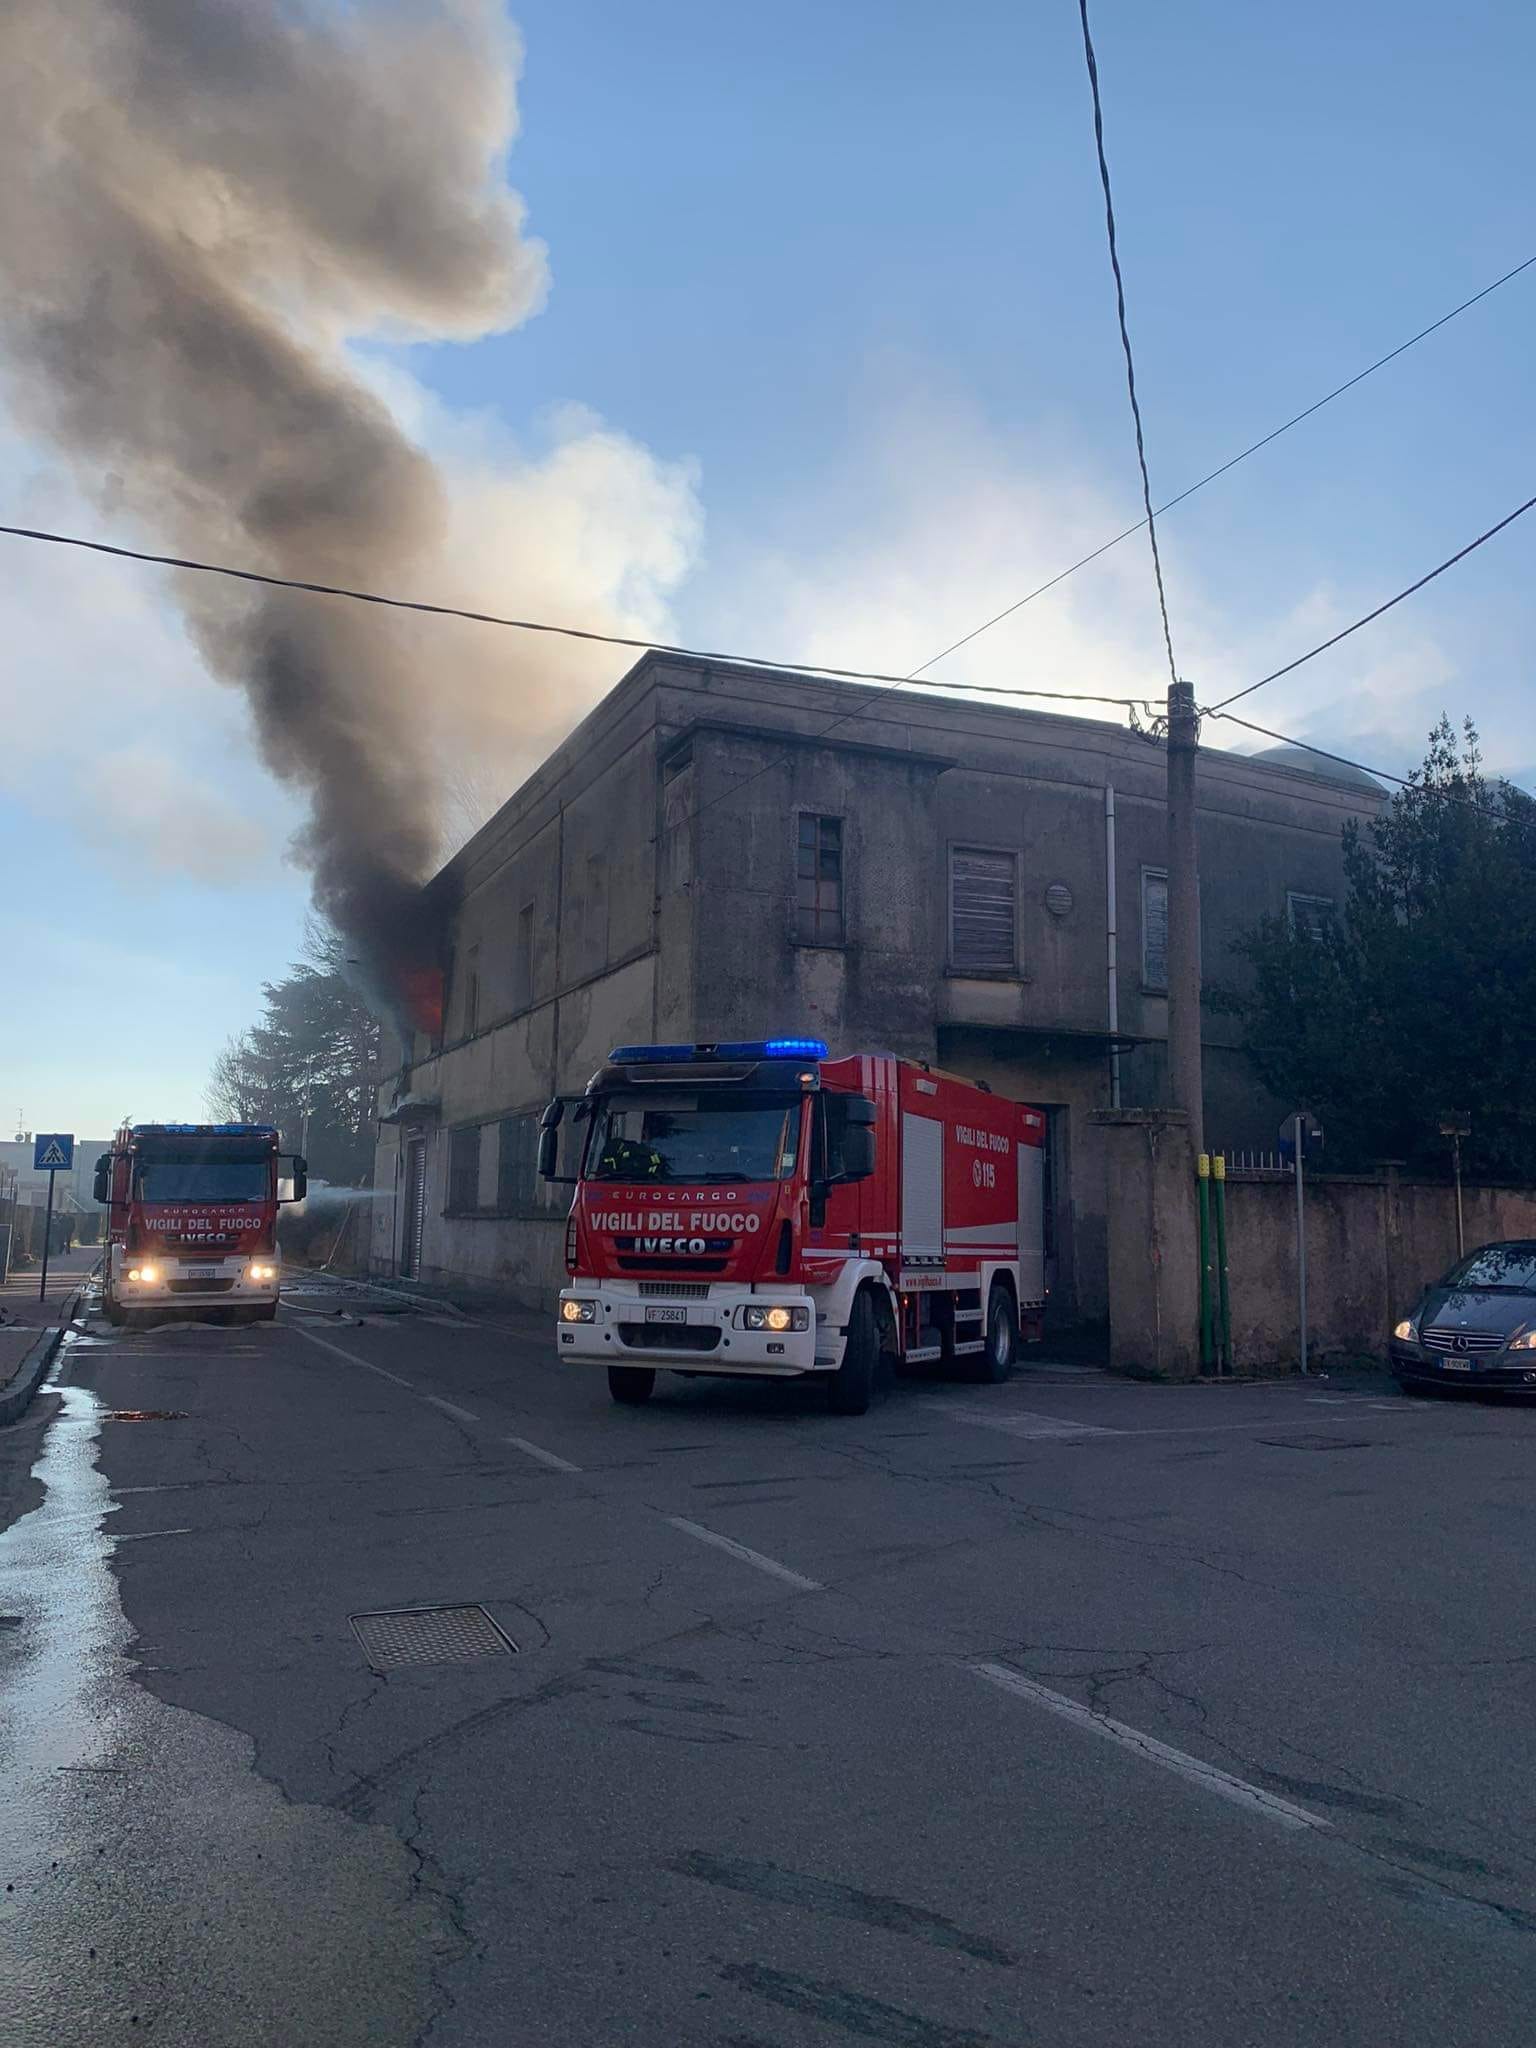 Ieri su ilS: incendio a Caronno, masterplan dell’ex Isotta Faschini, fermata del bus incatenata, covid nelle rsa